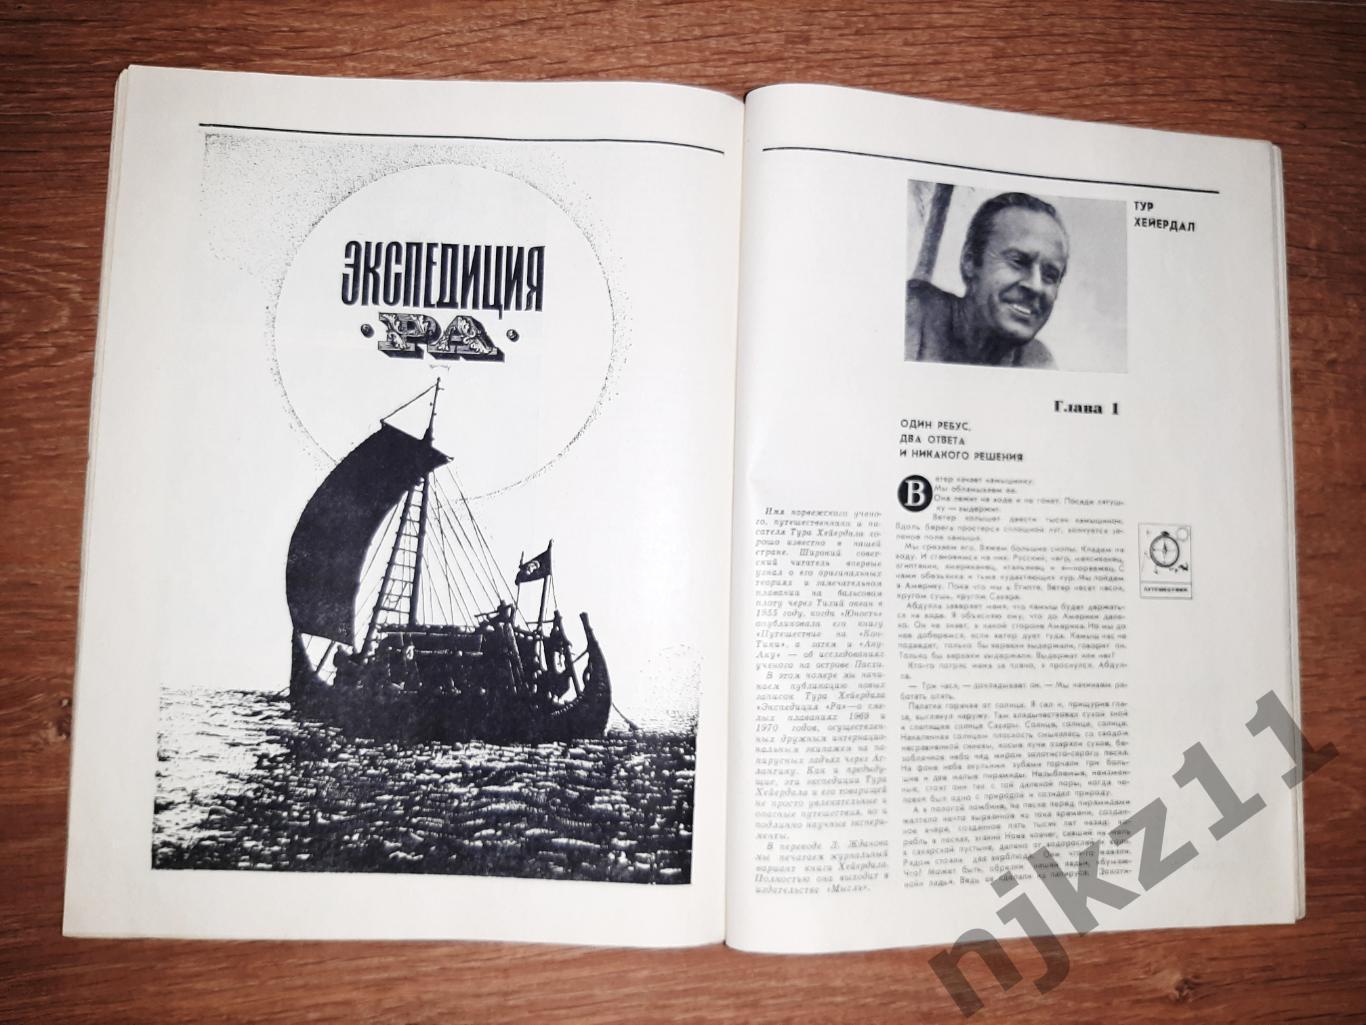 Журнал юность 1971 № 2 Пахомова и Горшков фигурное катание 5